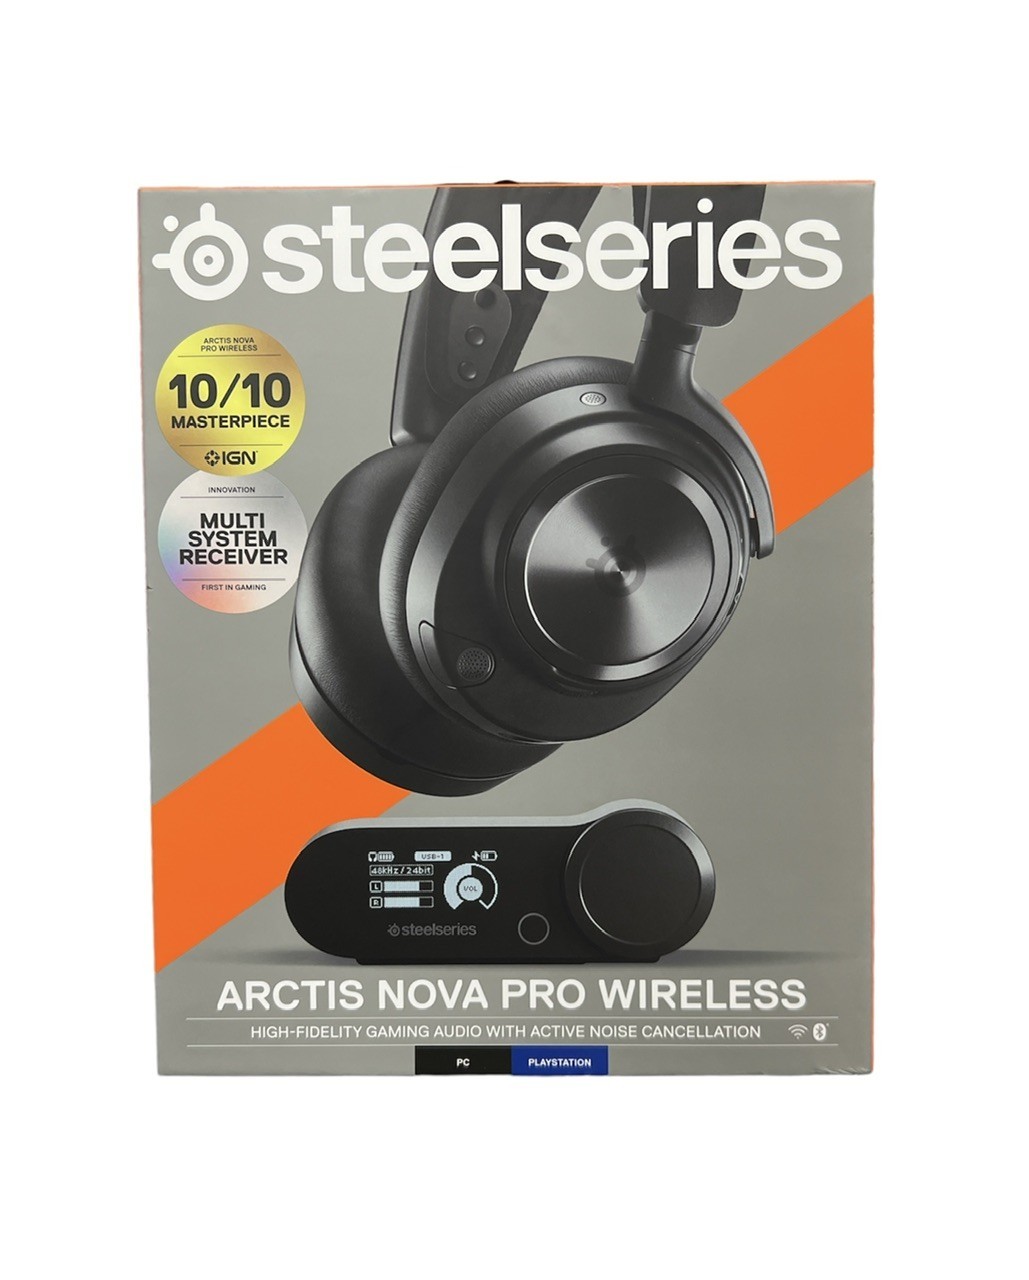 Steelseries Headphones 61520 404464 - $249.00